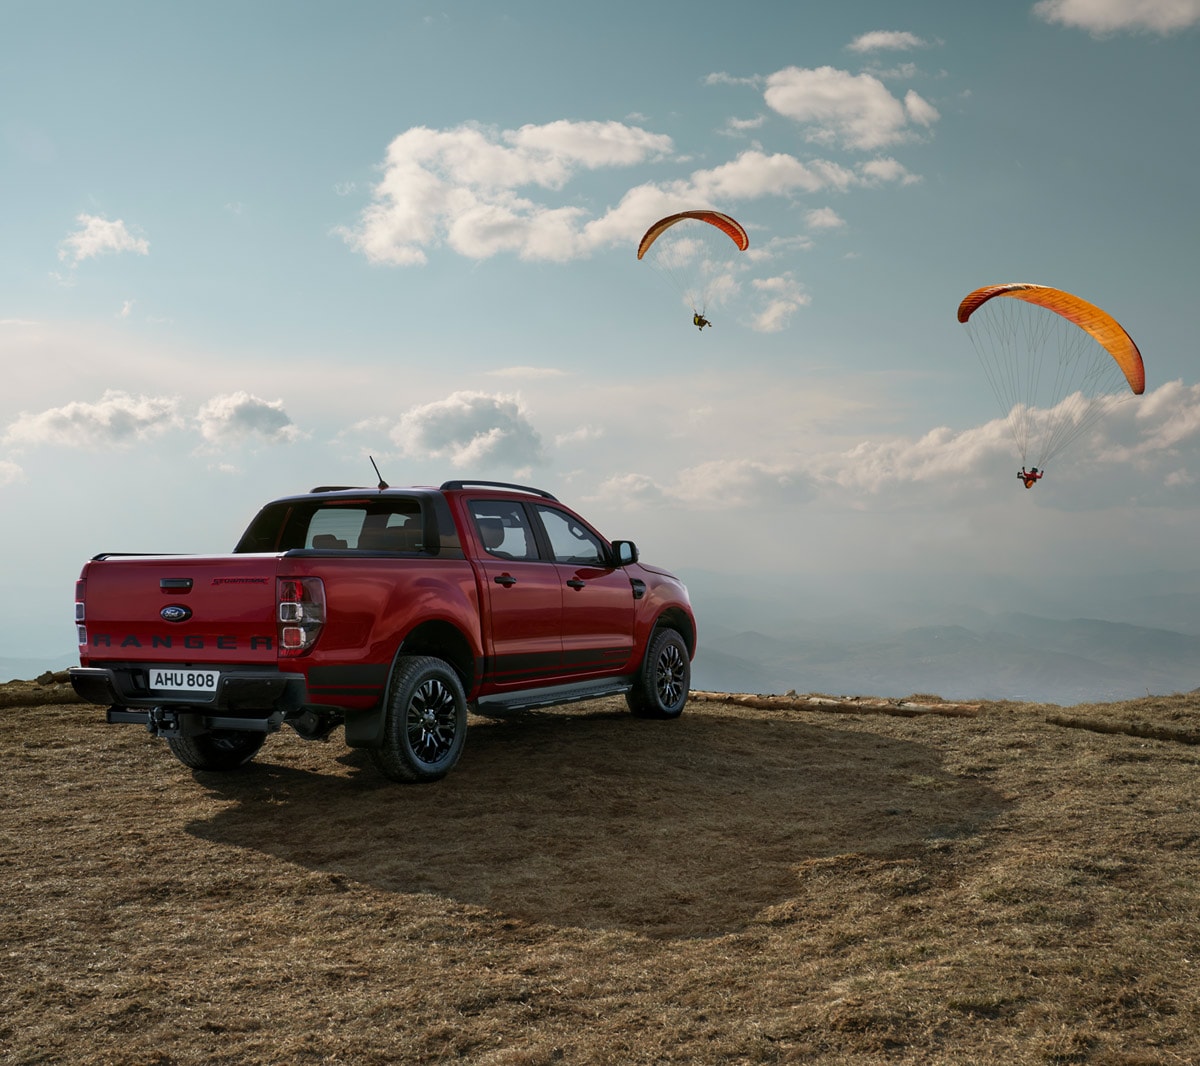 Ford Ranger Stormtrak rot ¾-Seitenansicht parkt in Dünenlandschaft und Paraglider am Himmel